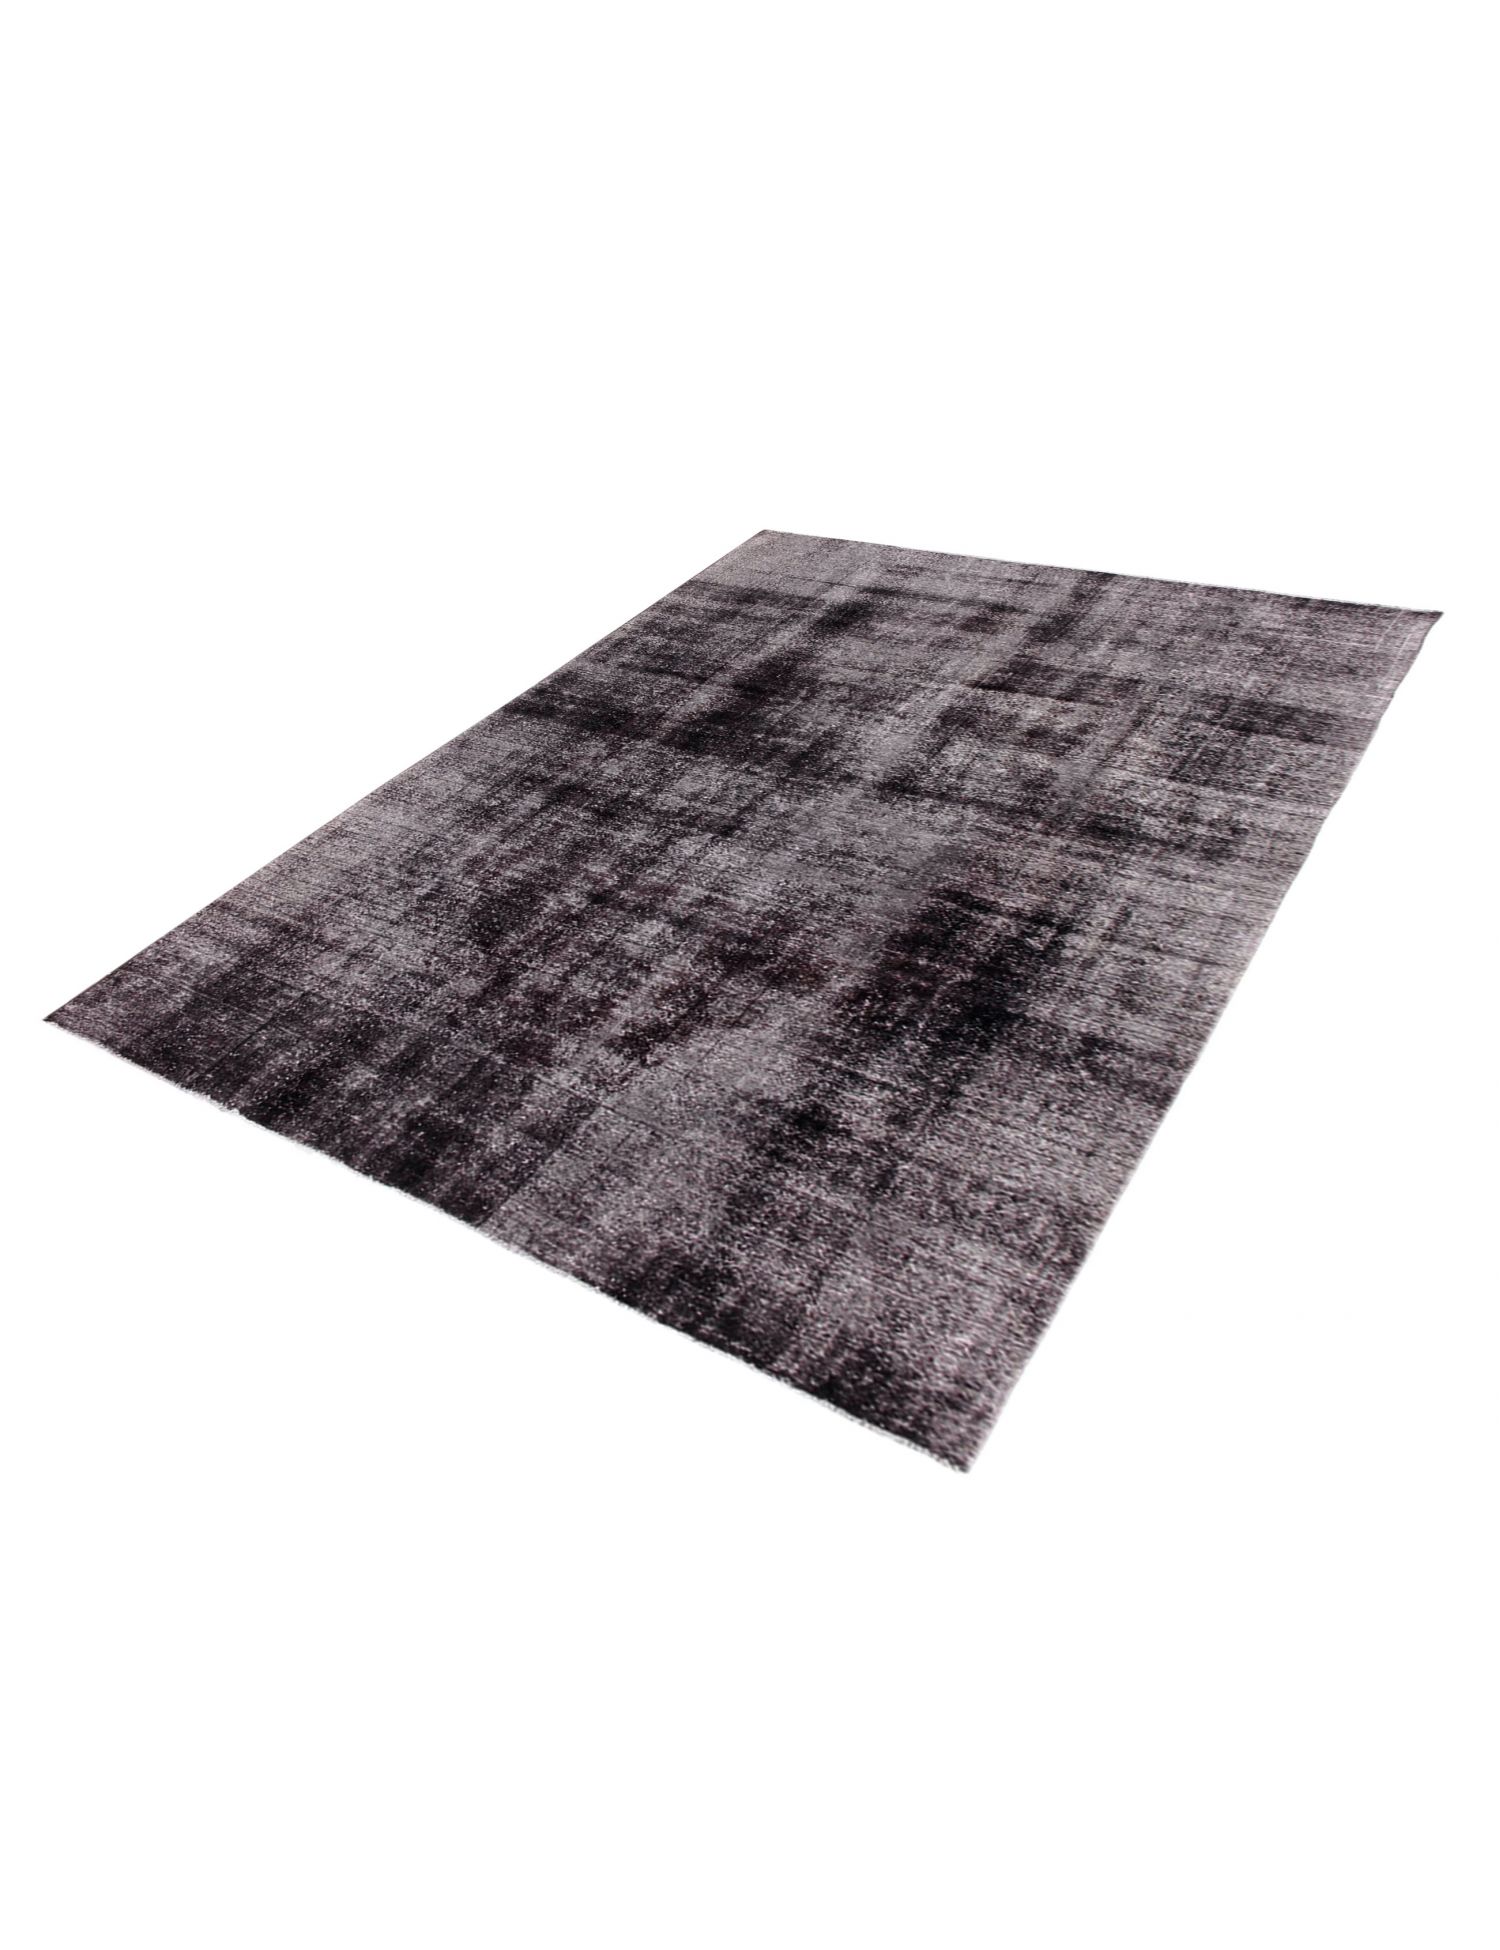 Persian Vintage Carpet  black <br/>369 x 279 cm